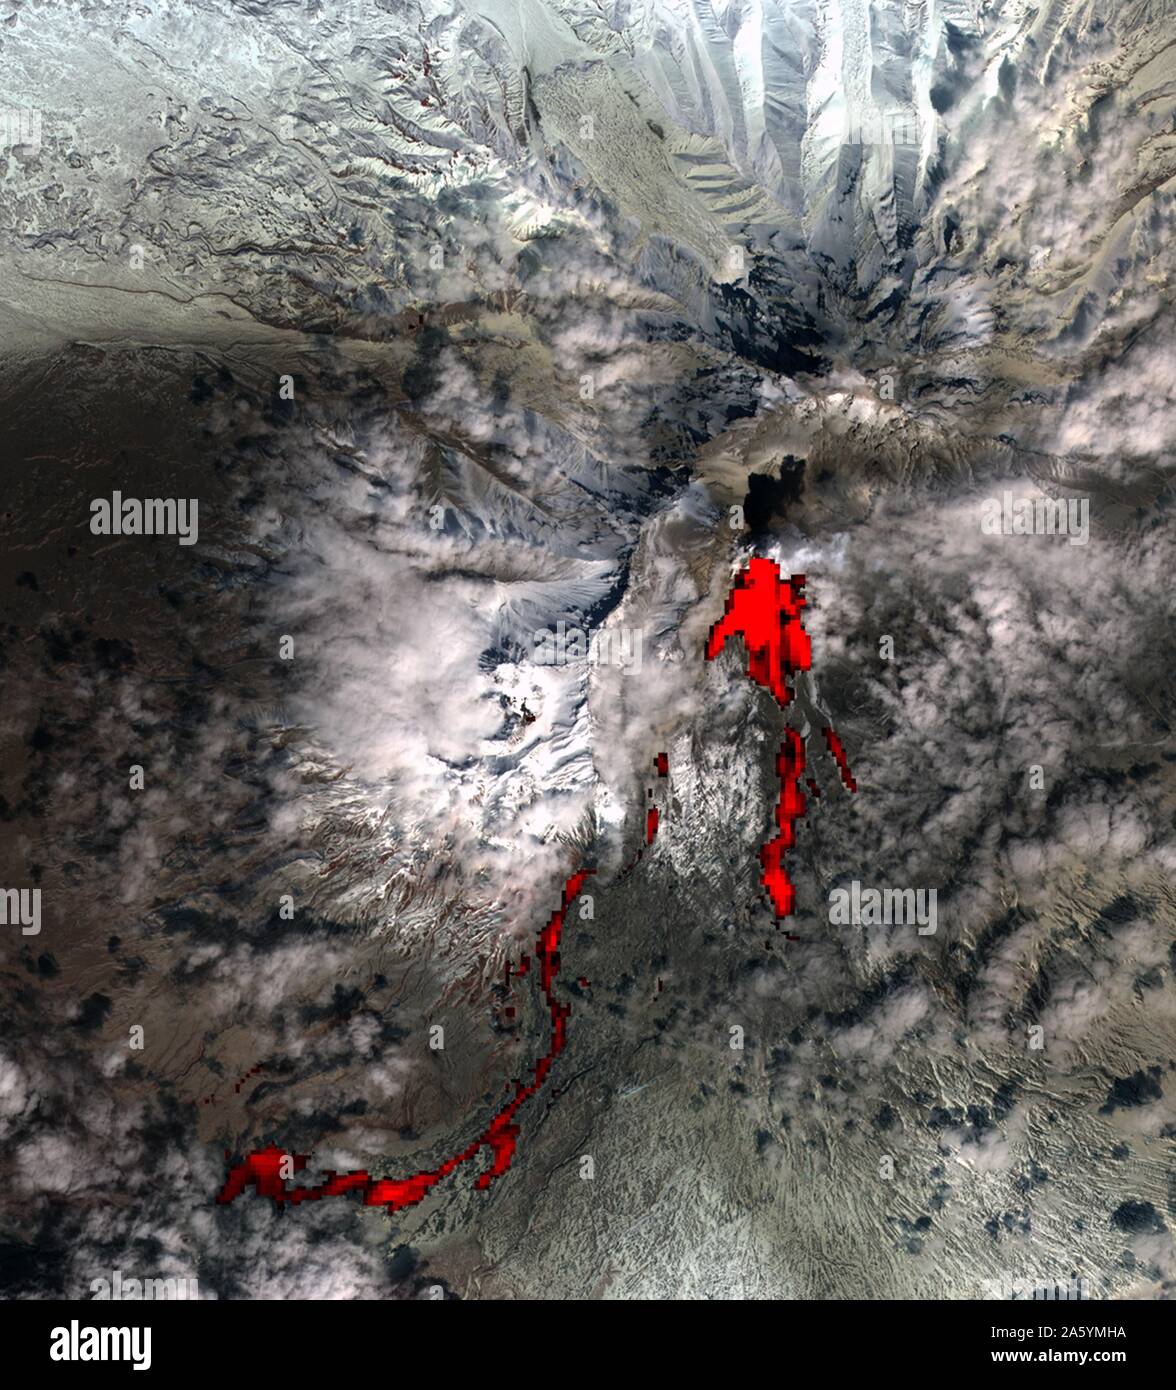 L'une des plus active volcaniquement régions du monde, la péninsule du Kamtchatka dans l'est de la Sibérie, en Russie. Le 26 avril 2007. Image satellite. Banque D'Images